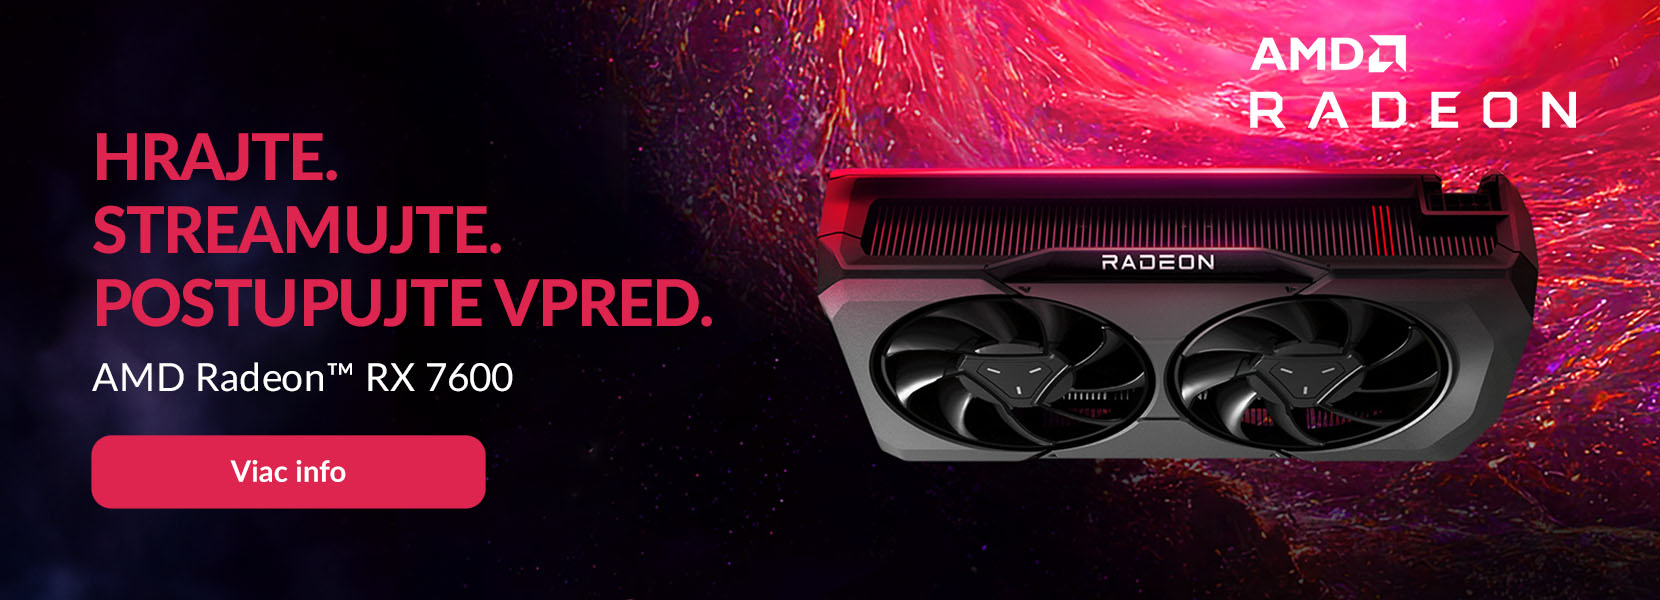 Hrajte a streamujte s AMD Radeon RX 7600